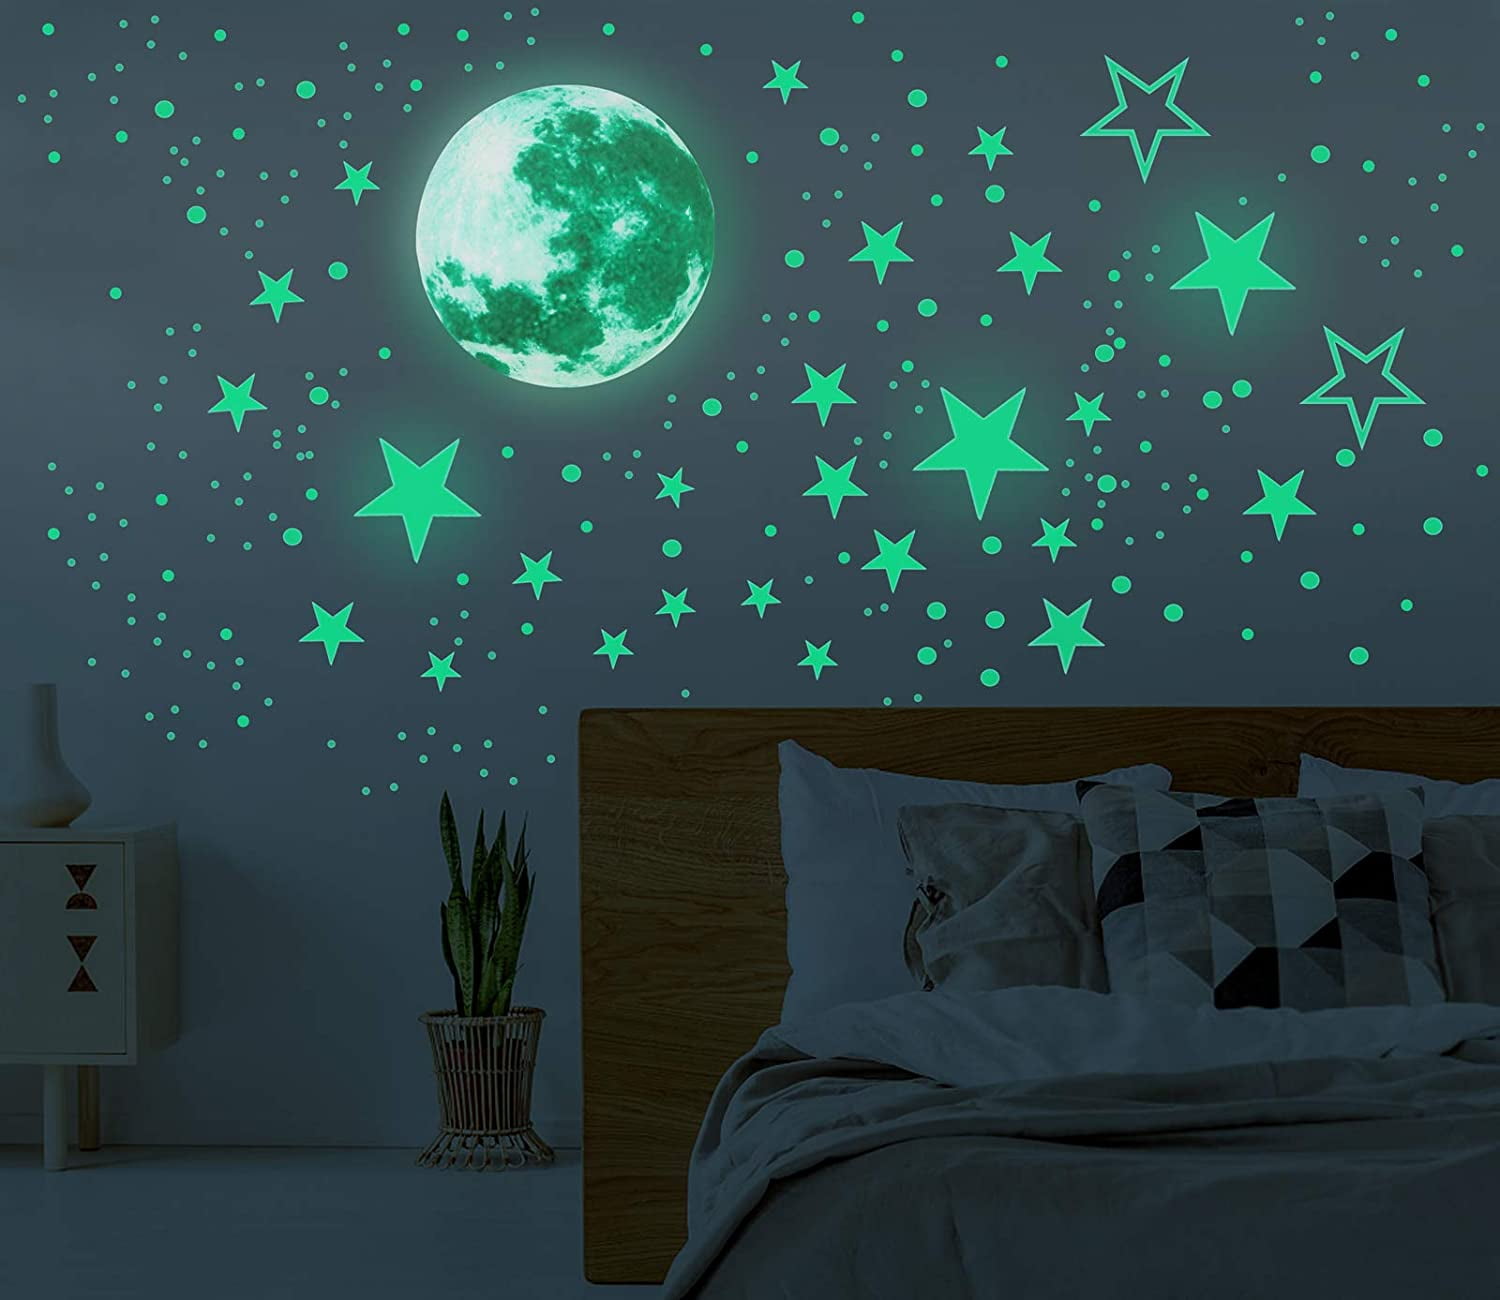 435pcs Glow In The Dark Luminous Stars & Moon Wall Stickers Decal Kid Room Decor 